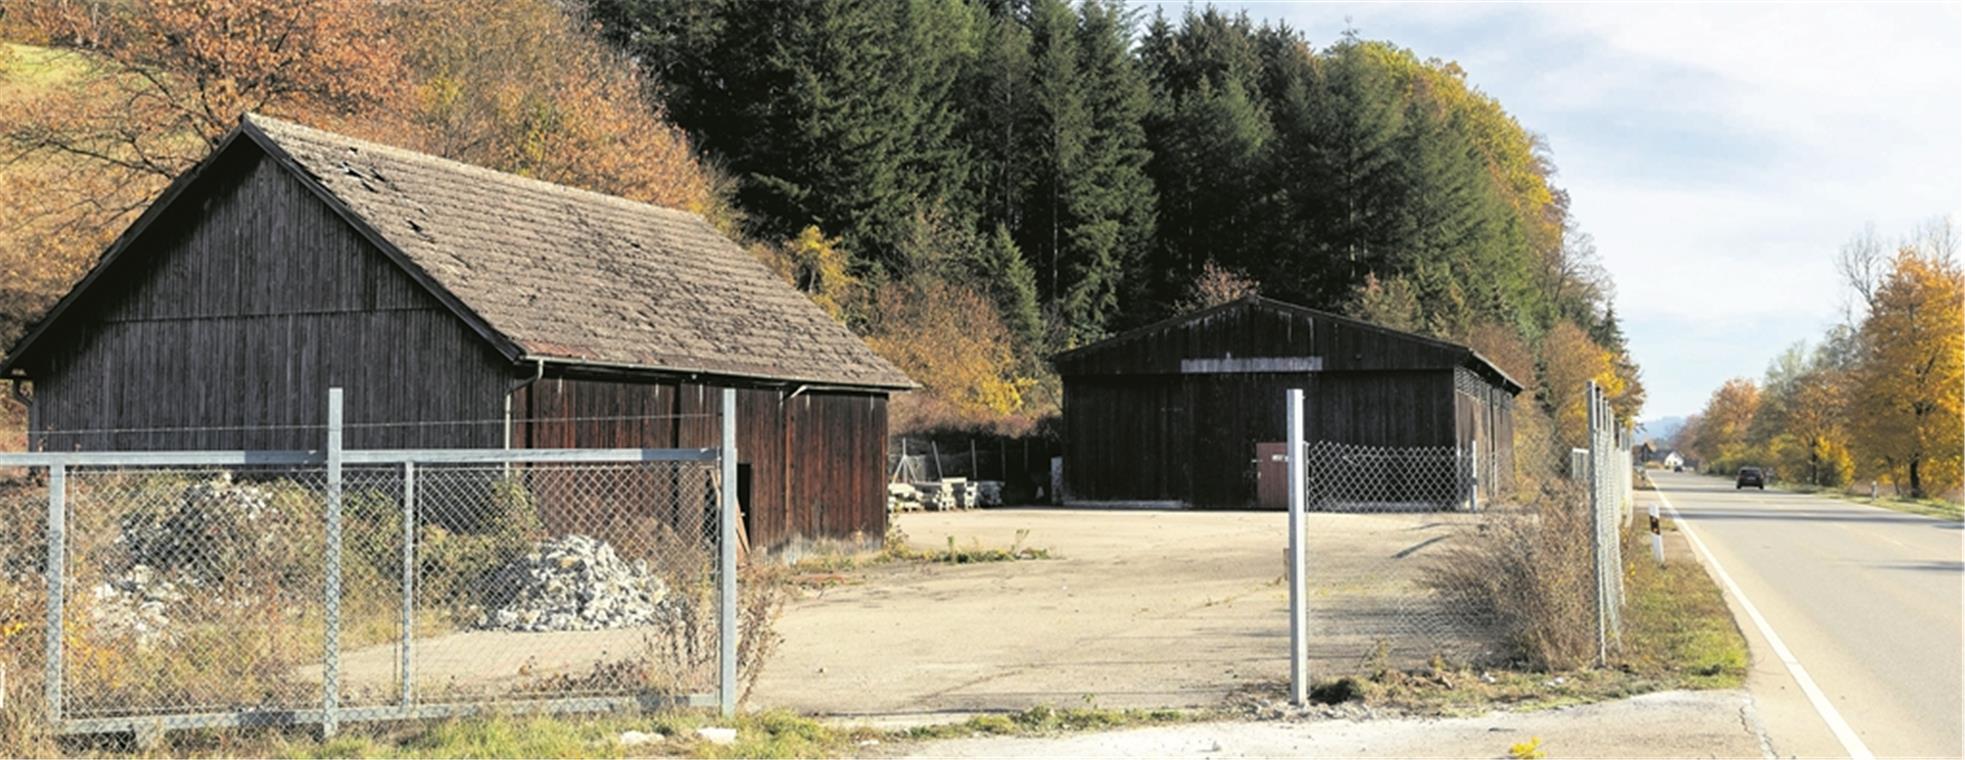 Die bisherige Außenstelle der Straßenmeisterei Backnang an der L1066 bei Bartenbach soll aufgegeben werden. Der Standort Murrhardt soll Stützpunkt für den Winterdienst werden. Foto: J. Fiedler